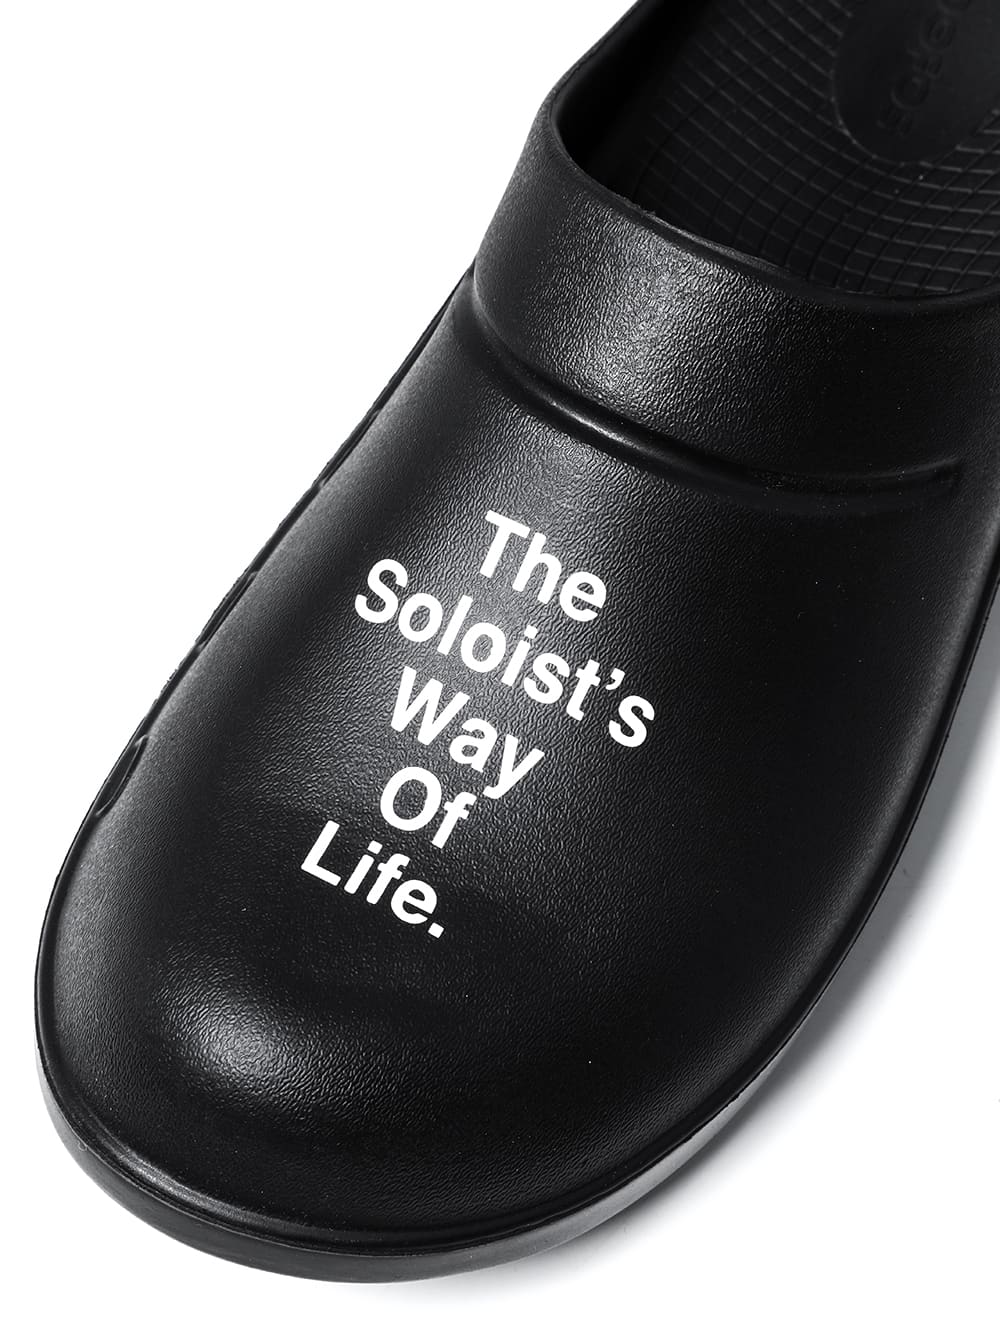 クロックス /the Soloist's Way Of Life./